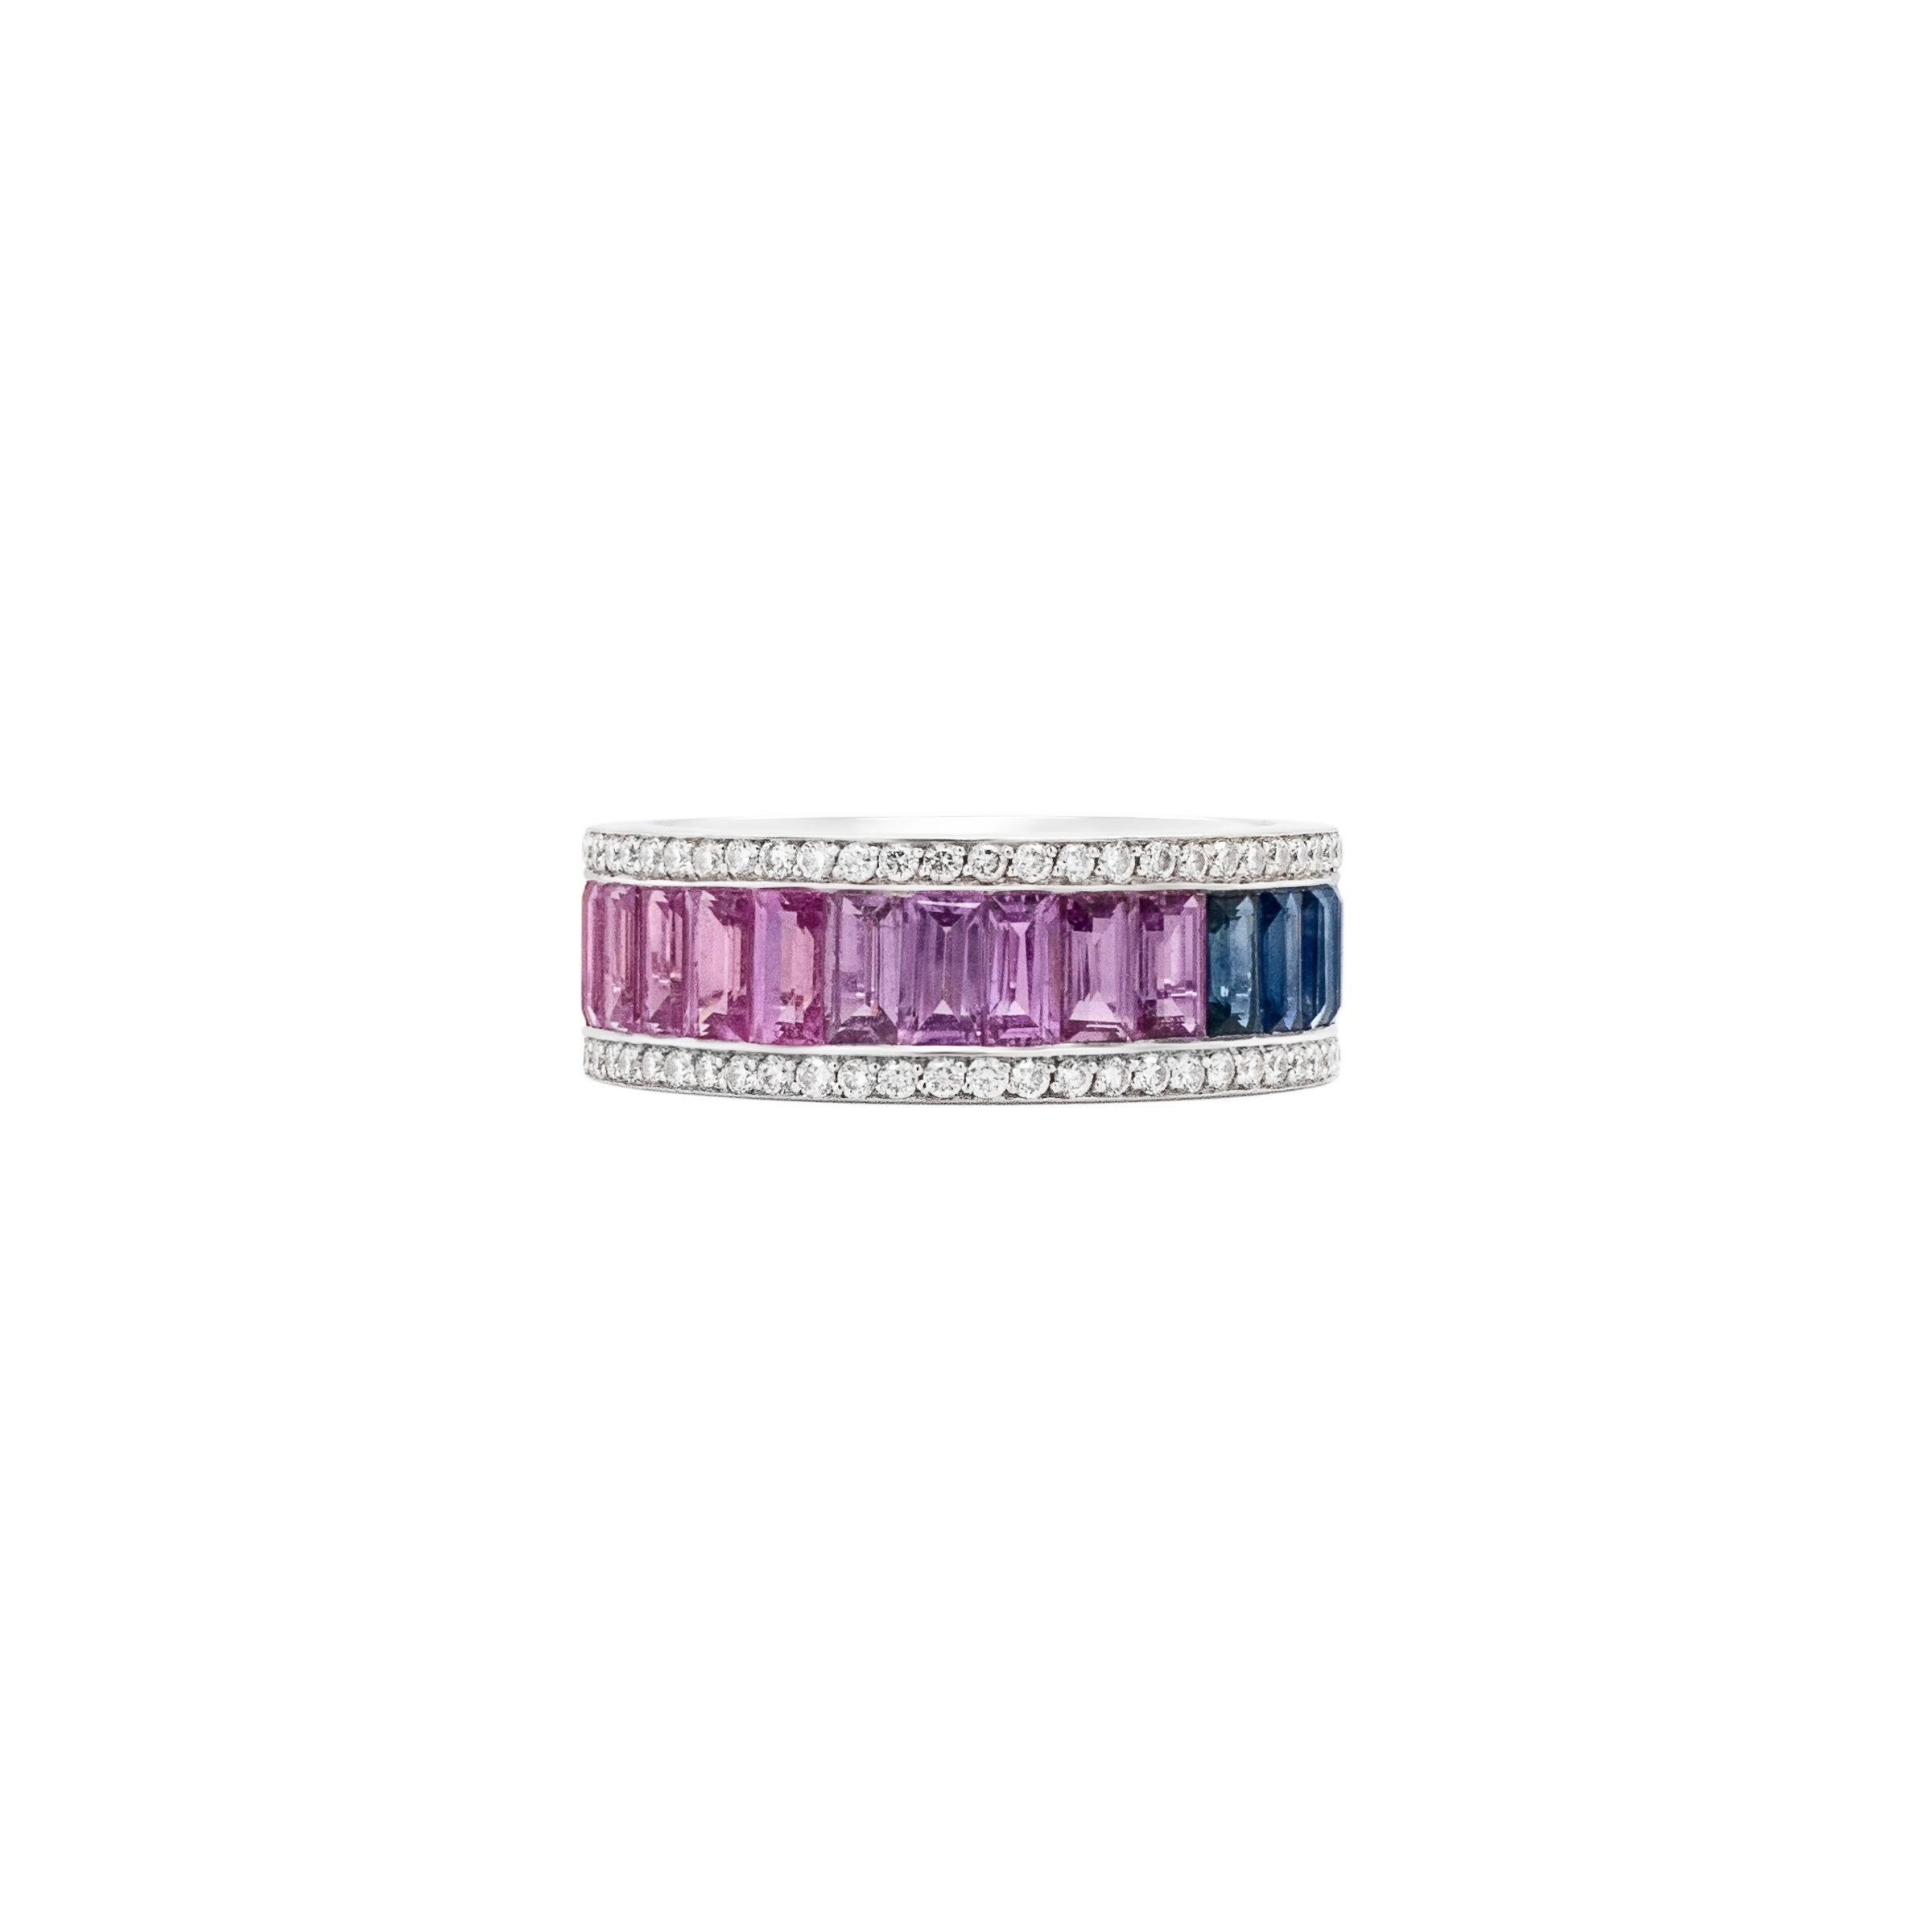 Te presentamos un fascinante anillo arco iris, un impresionante testimonio de la belleza de las piedras preciosas de colores. Elaborado con meticulosa atención al detalle, este anillo presenta una deslumbrante variedad de baguettes de zafiro de